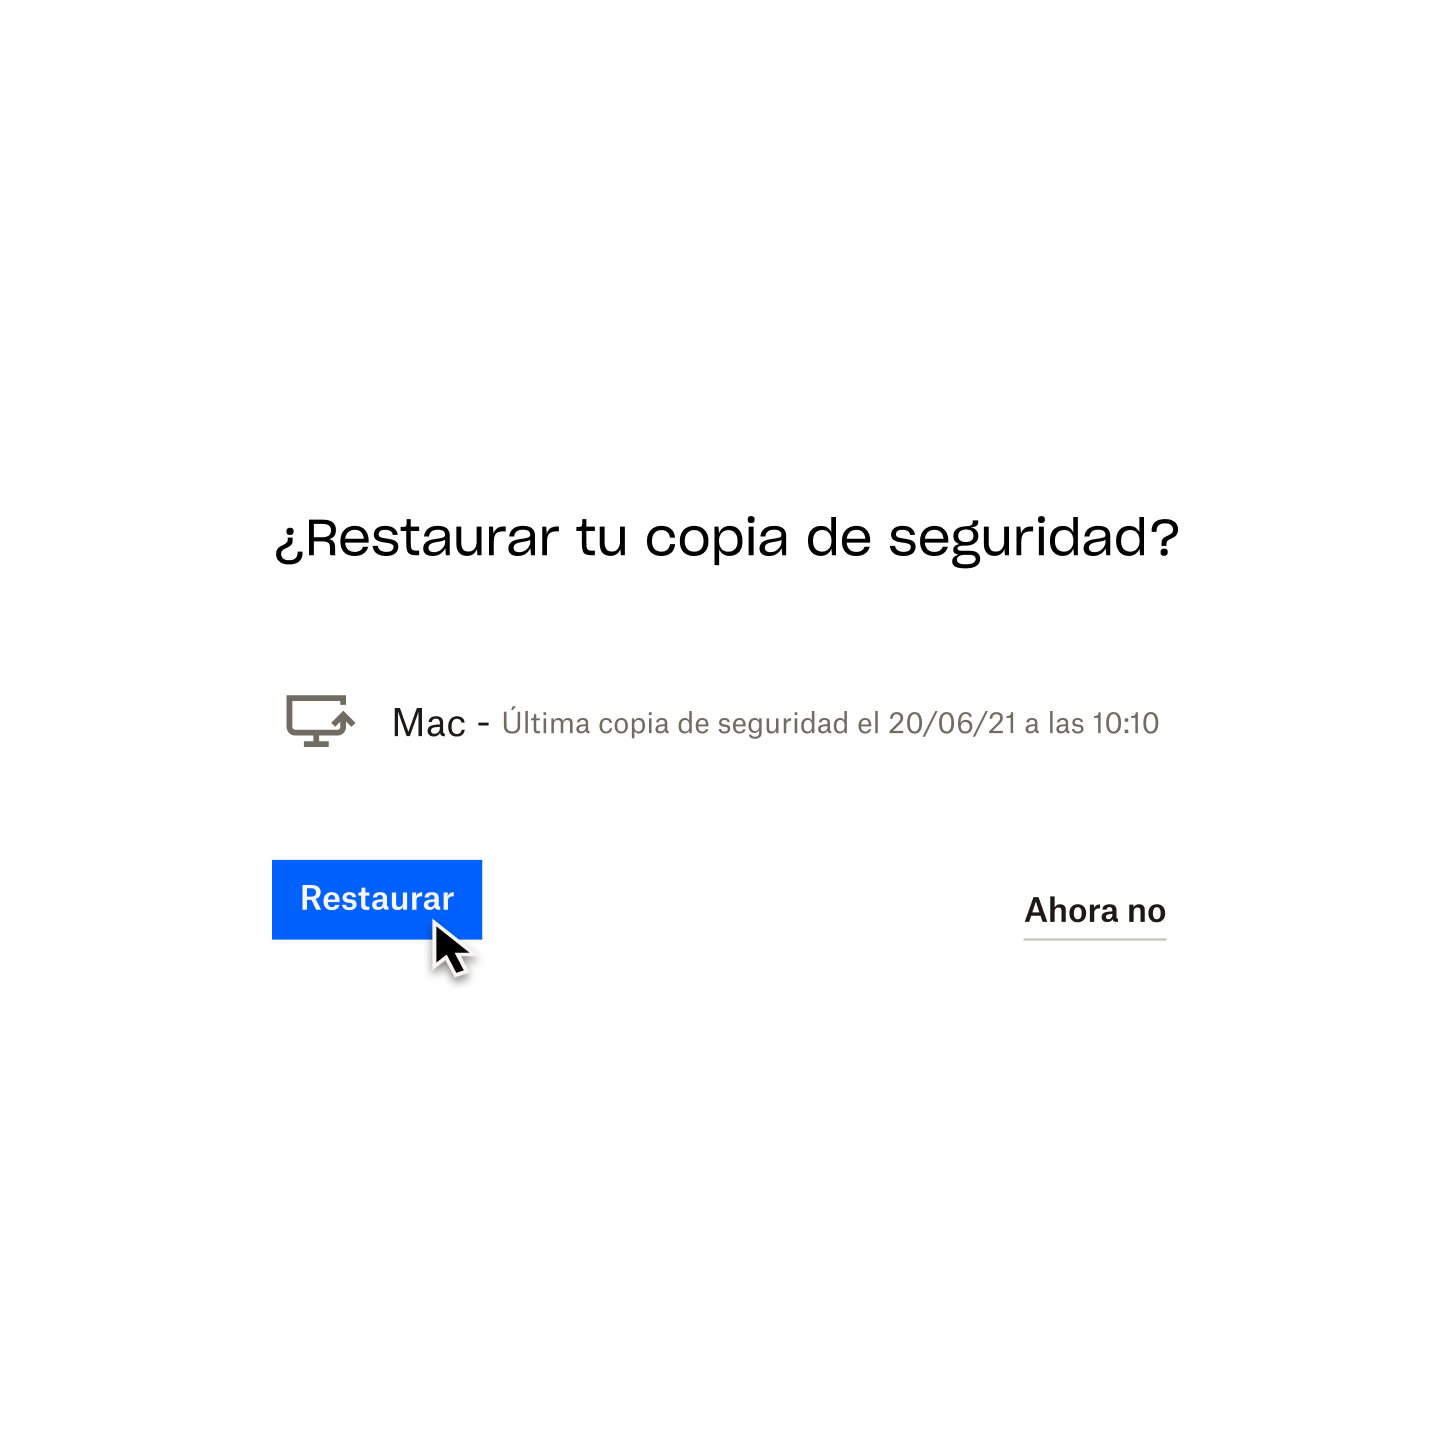 Usuario haciendo clic en un botón azul con el mensaje “Restaurar” para restaurar la versión más reciente de su ordenador Mac que tenga copia de seguridad en Dropbox Backup.